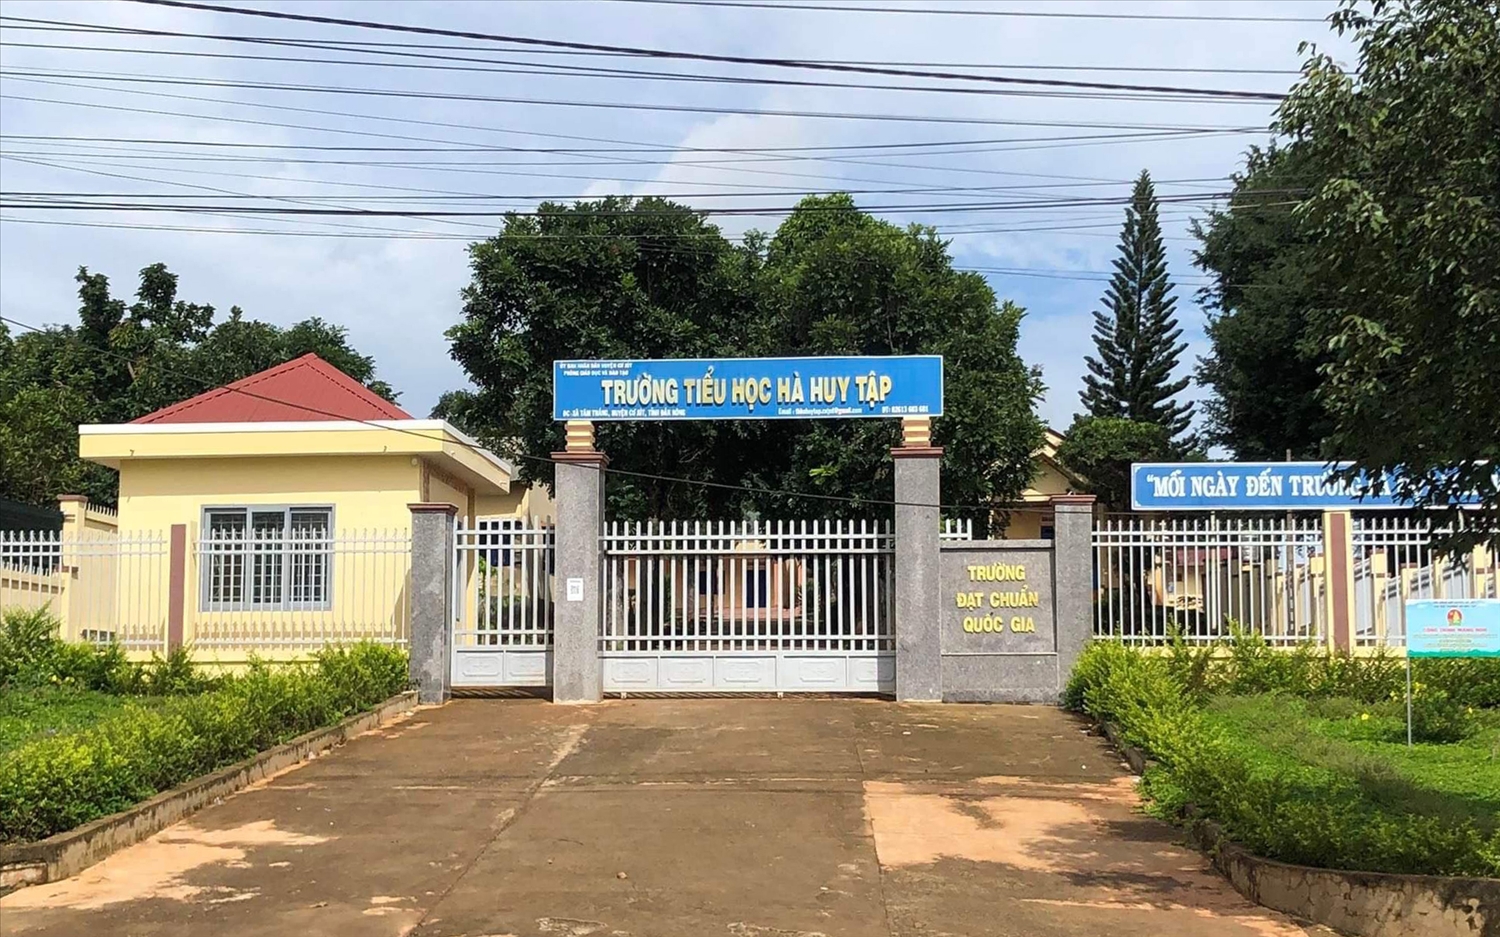 Trường Tiểu học Hà Huy Tập nơi ông Nguyễn Ngọc Hải mắc nhiều sai phạm trong quá trình làm Hiệu trưởng